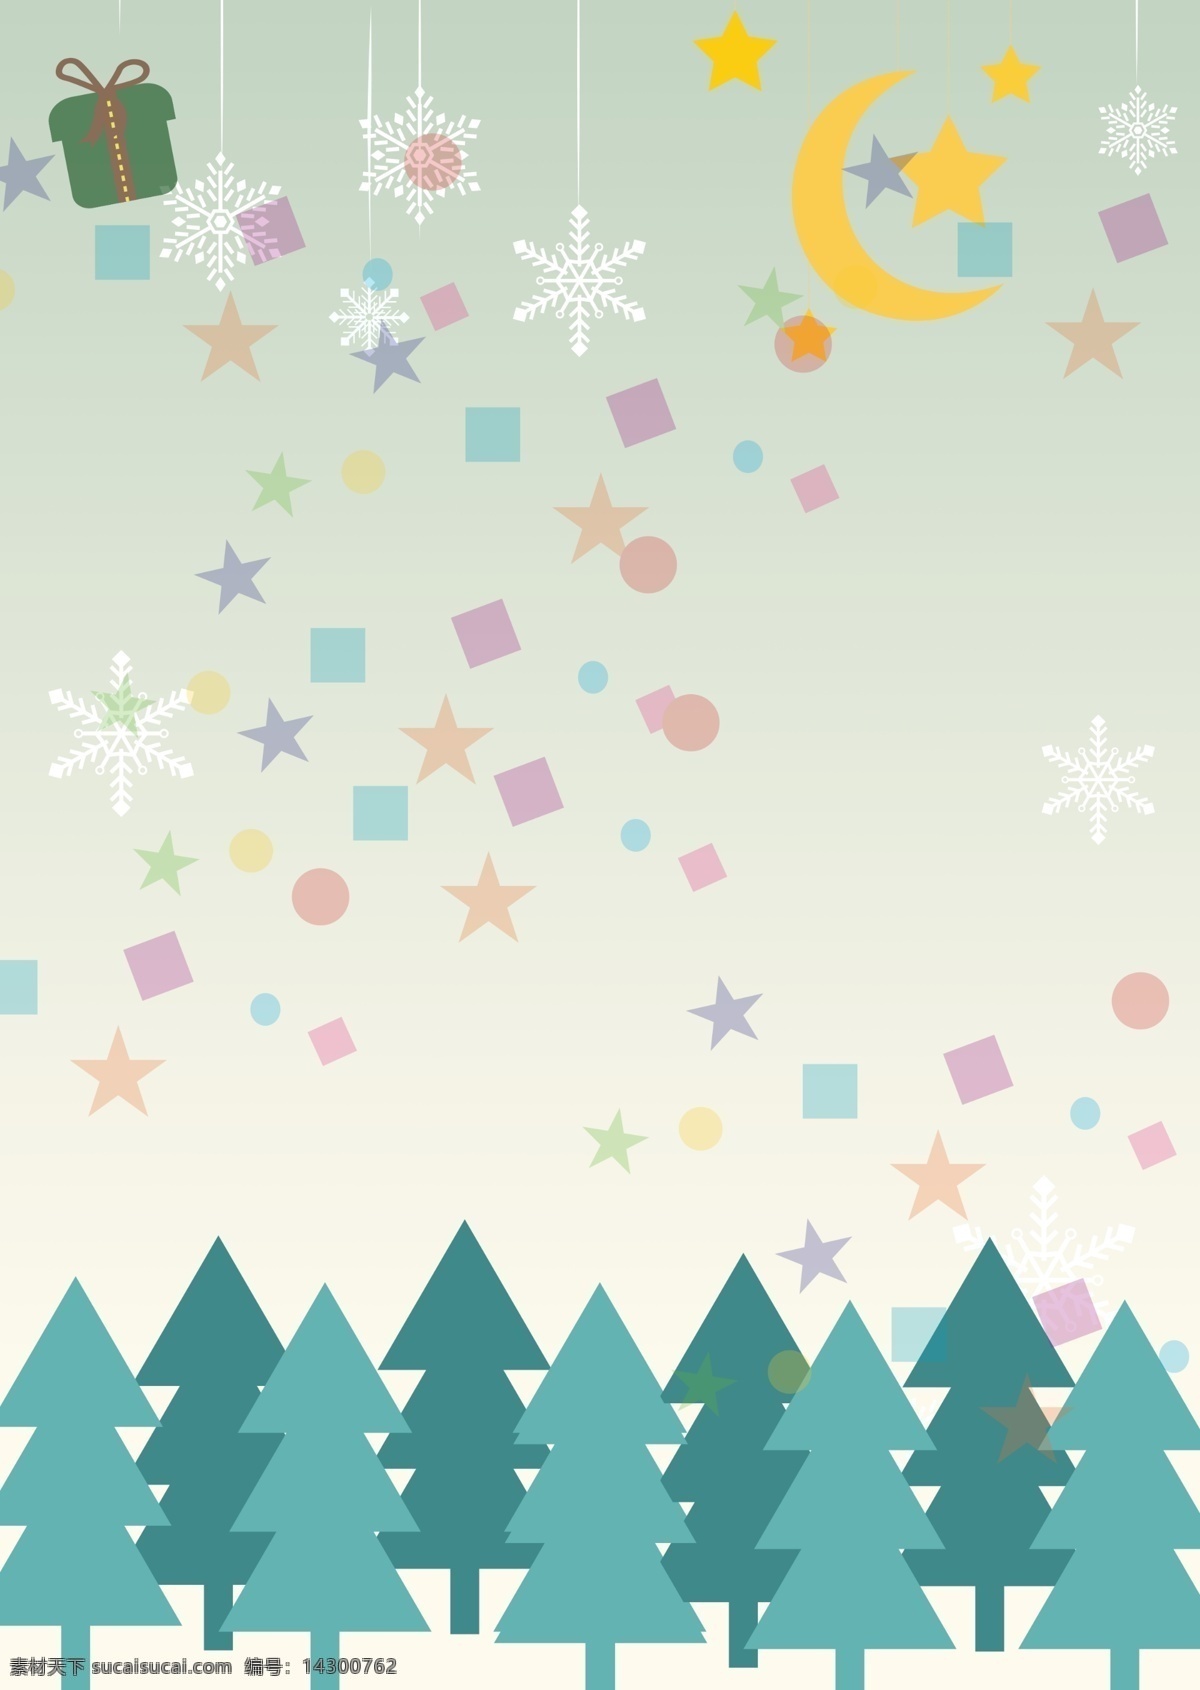 创意 圣诞 雪花 星星 装饰 树林 背景 礼物 圣诞节 背景图 月亮 节日背景 彩绘背景 特邀背景 促销背景 背景展板图